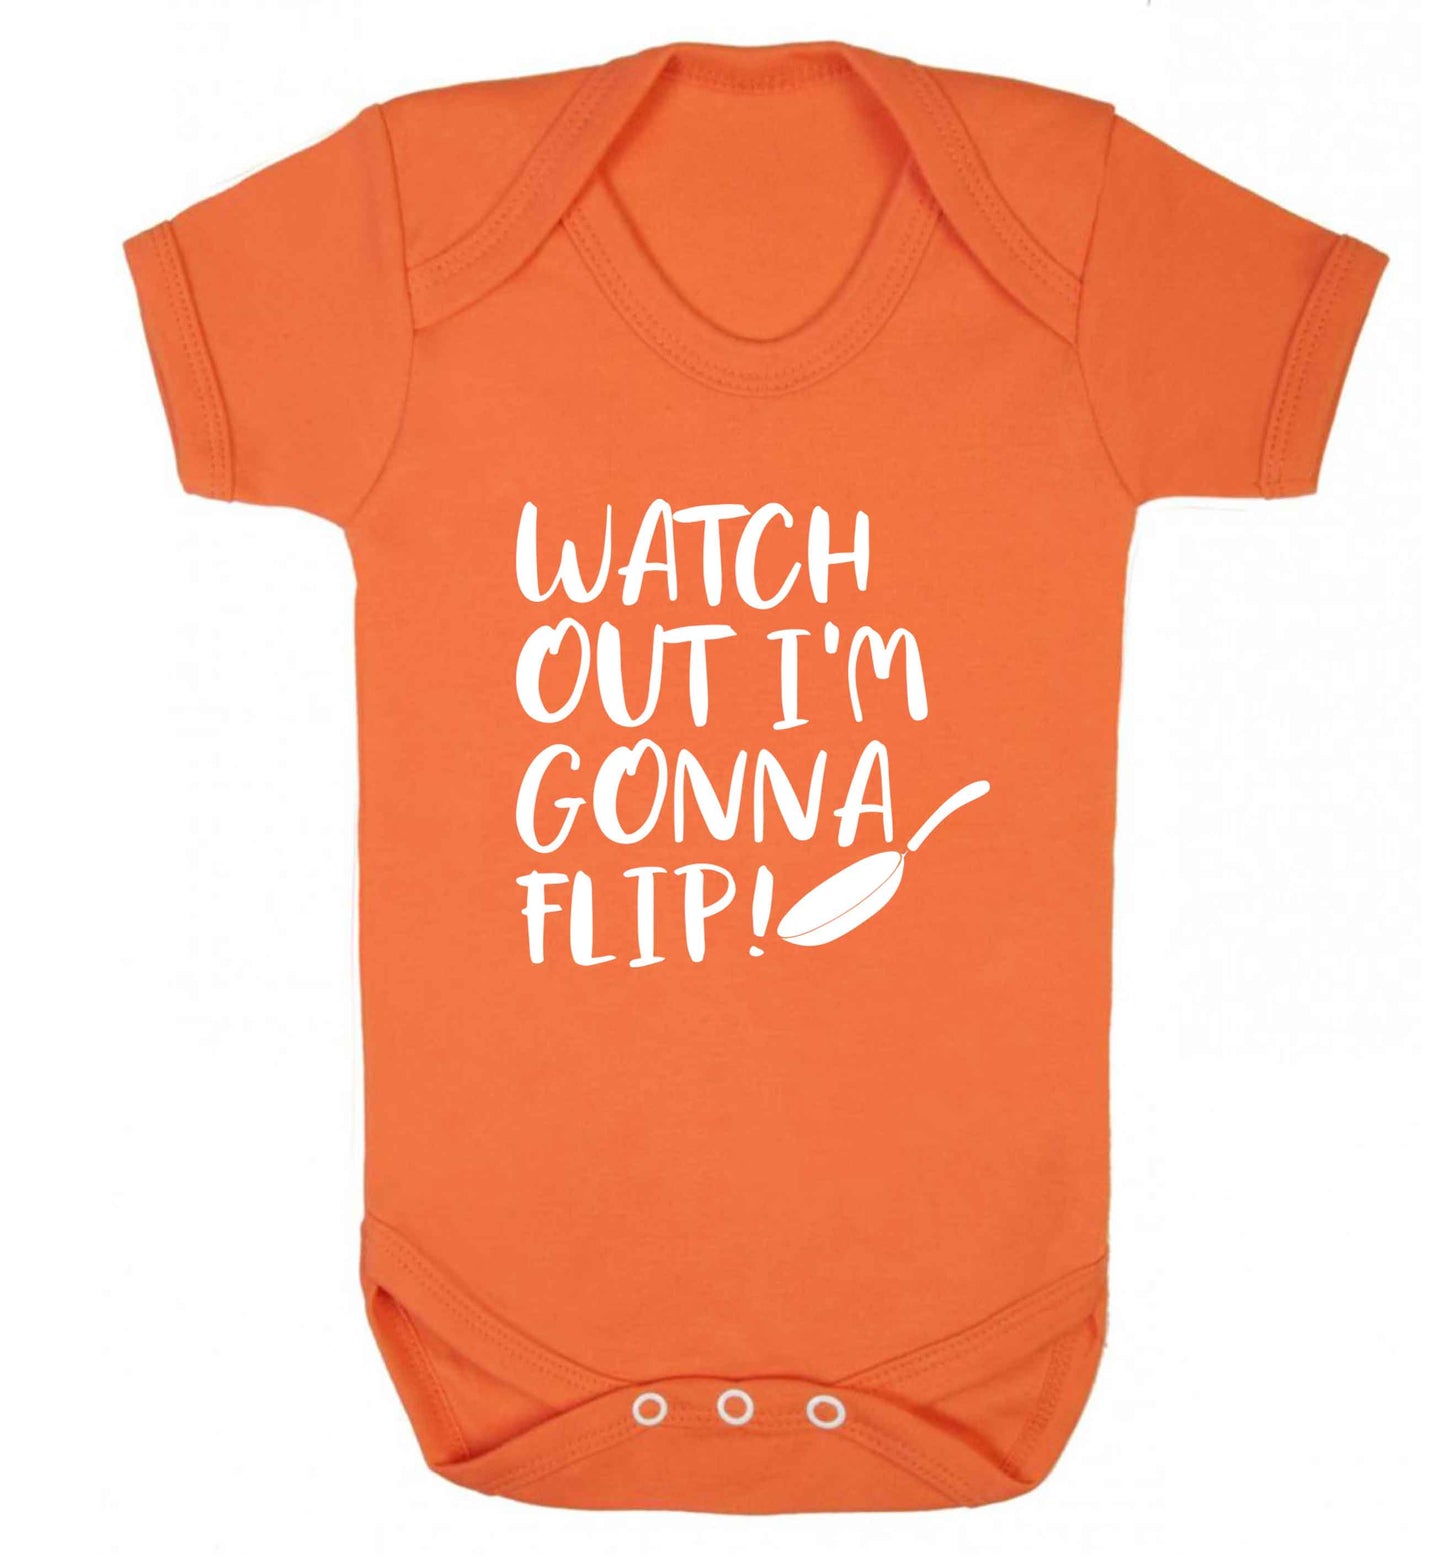 Watch out I'm gonna flip! baby vest orange 18-24 months